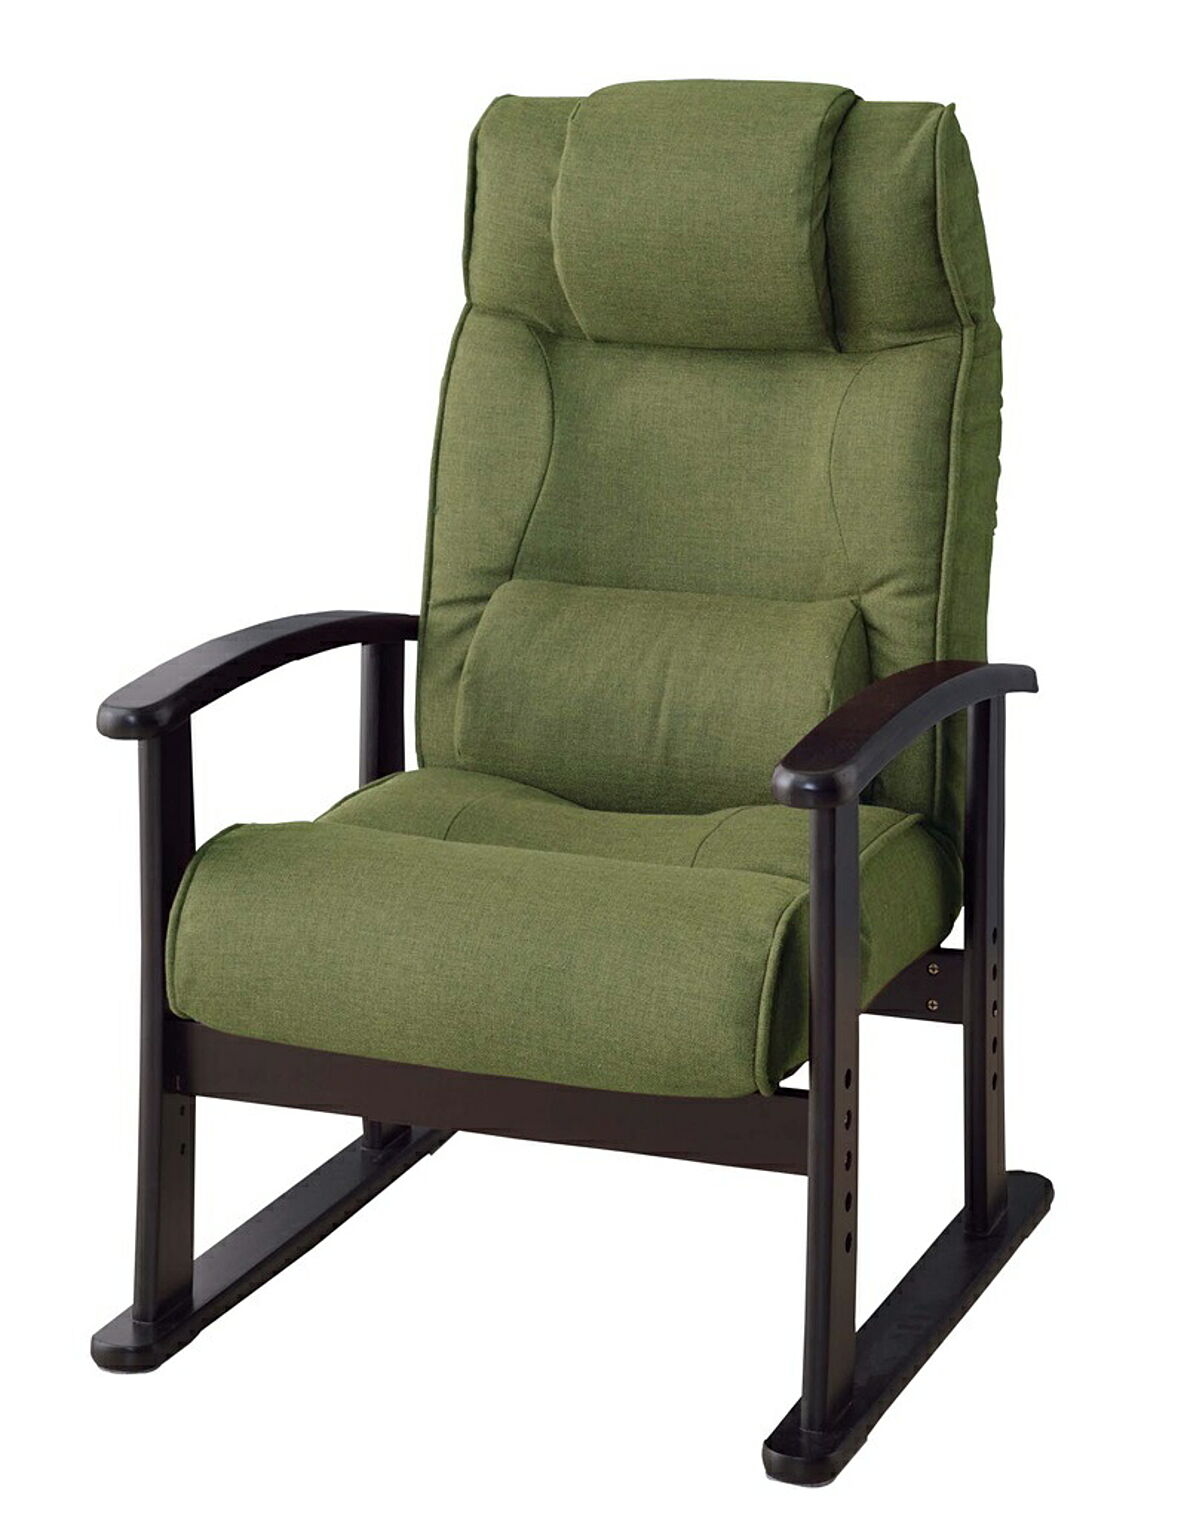 リクライニング機能付きボリューム高座椅子 W57×D60-108×H64×SH31-40 グリーン 腰楽チェア